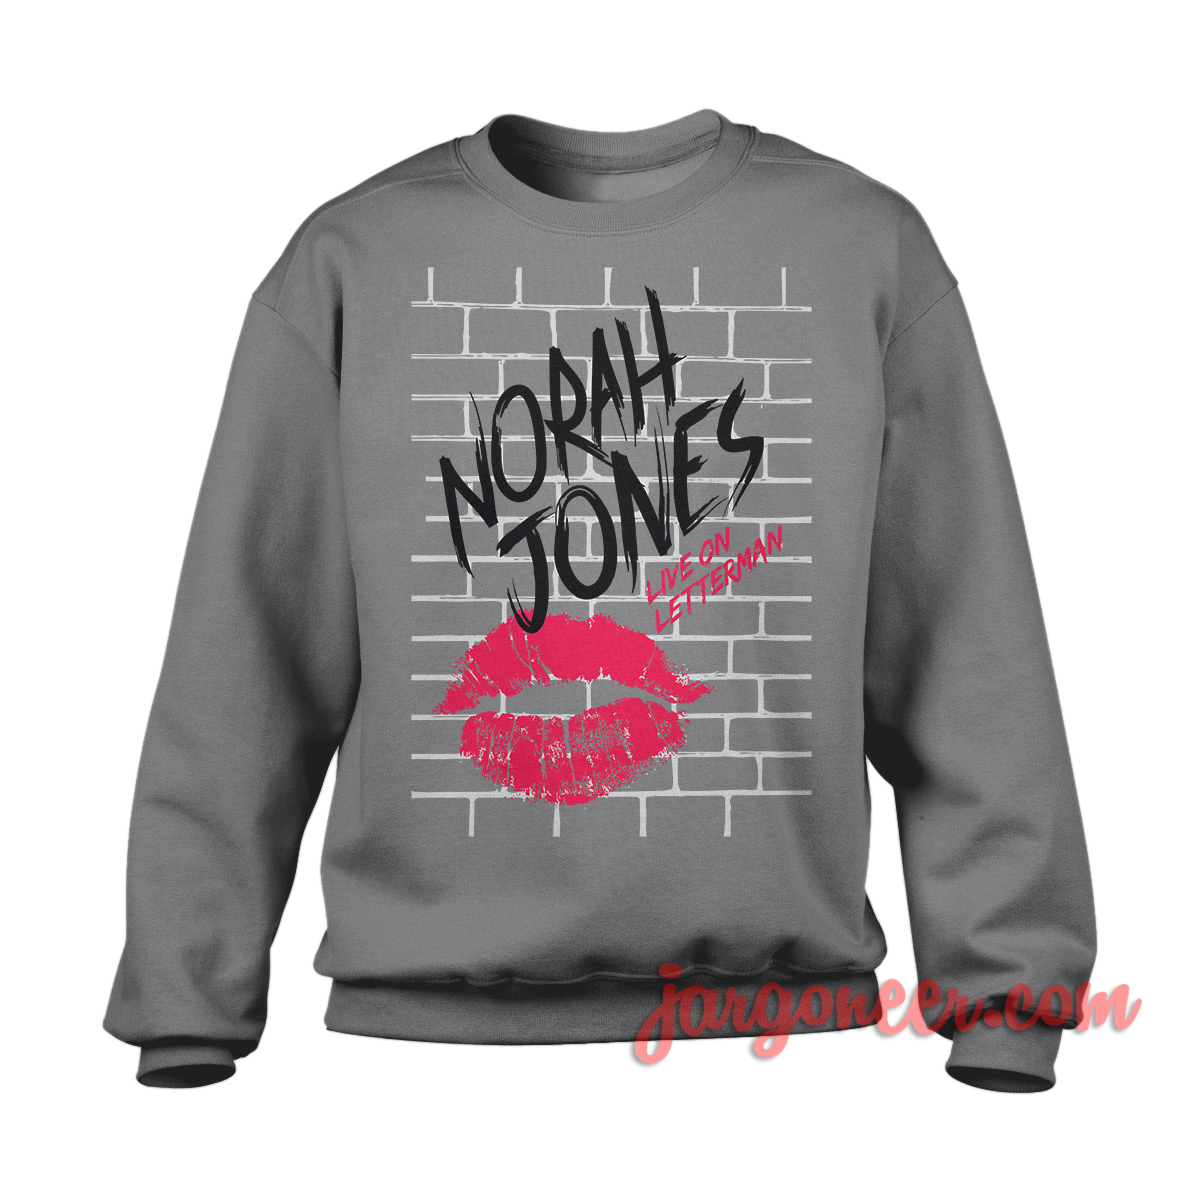 Norah Jones Live On Letterman Gray SS - Shop Unique Graphic Cool Shirt Designs